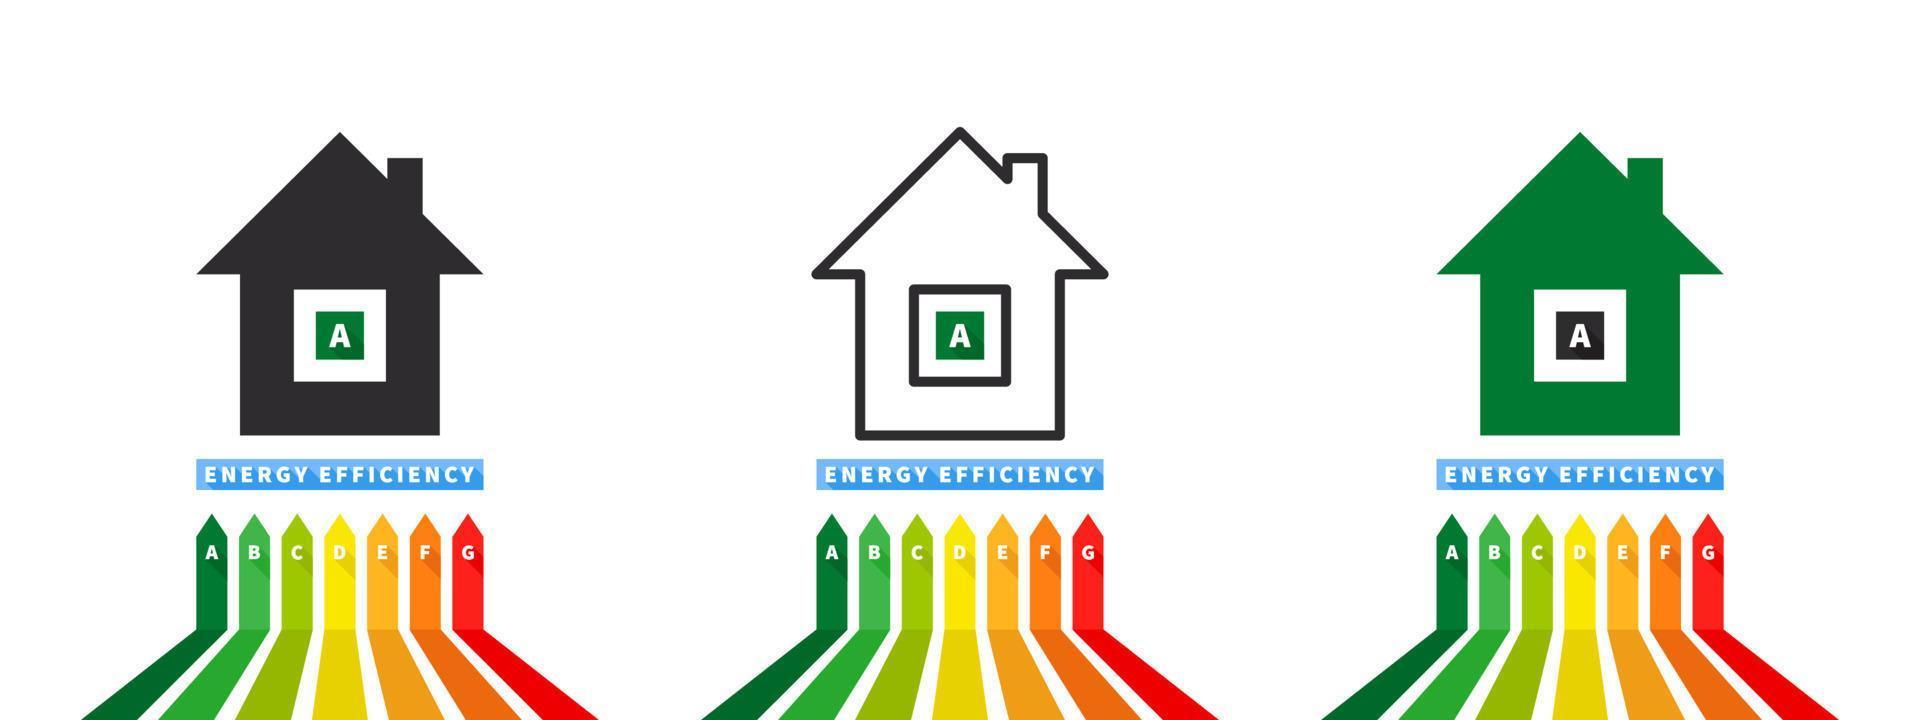 Casa energia efficienza scala. energia efficienza e valutazione grafico. vettore illustrazione